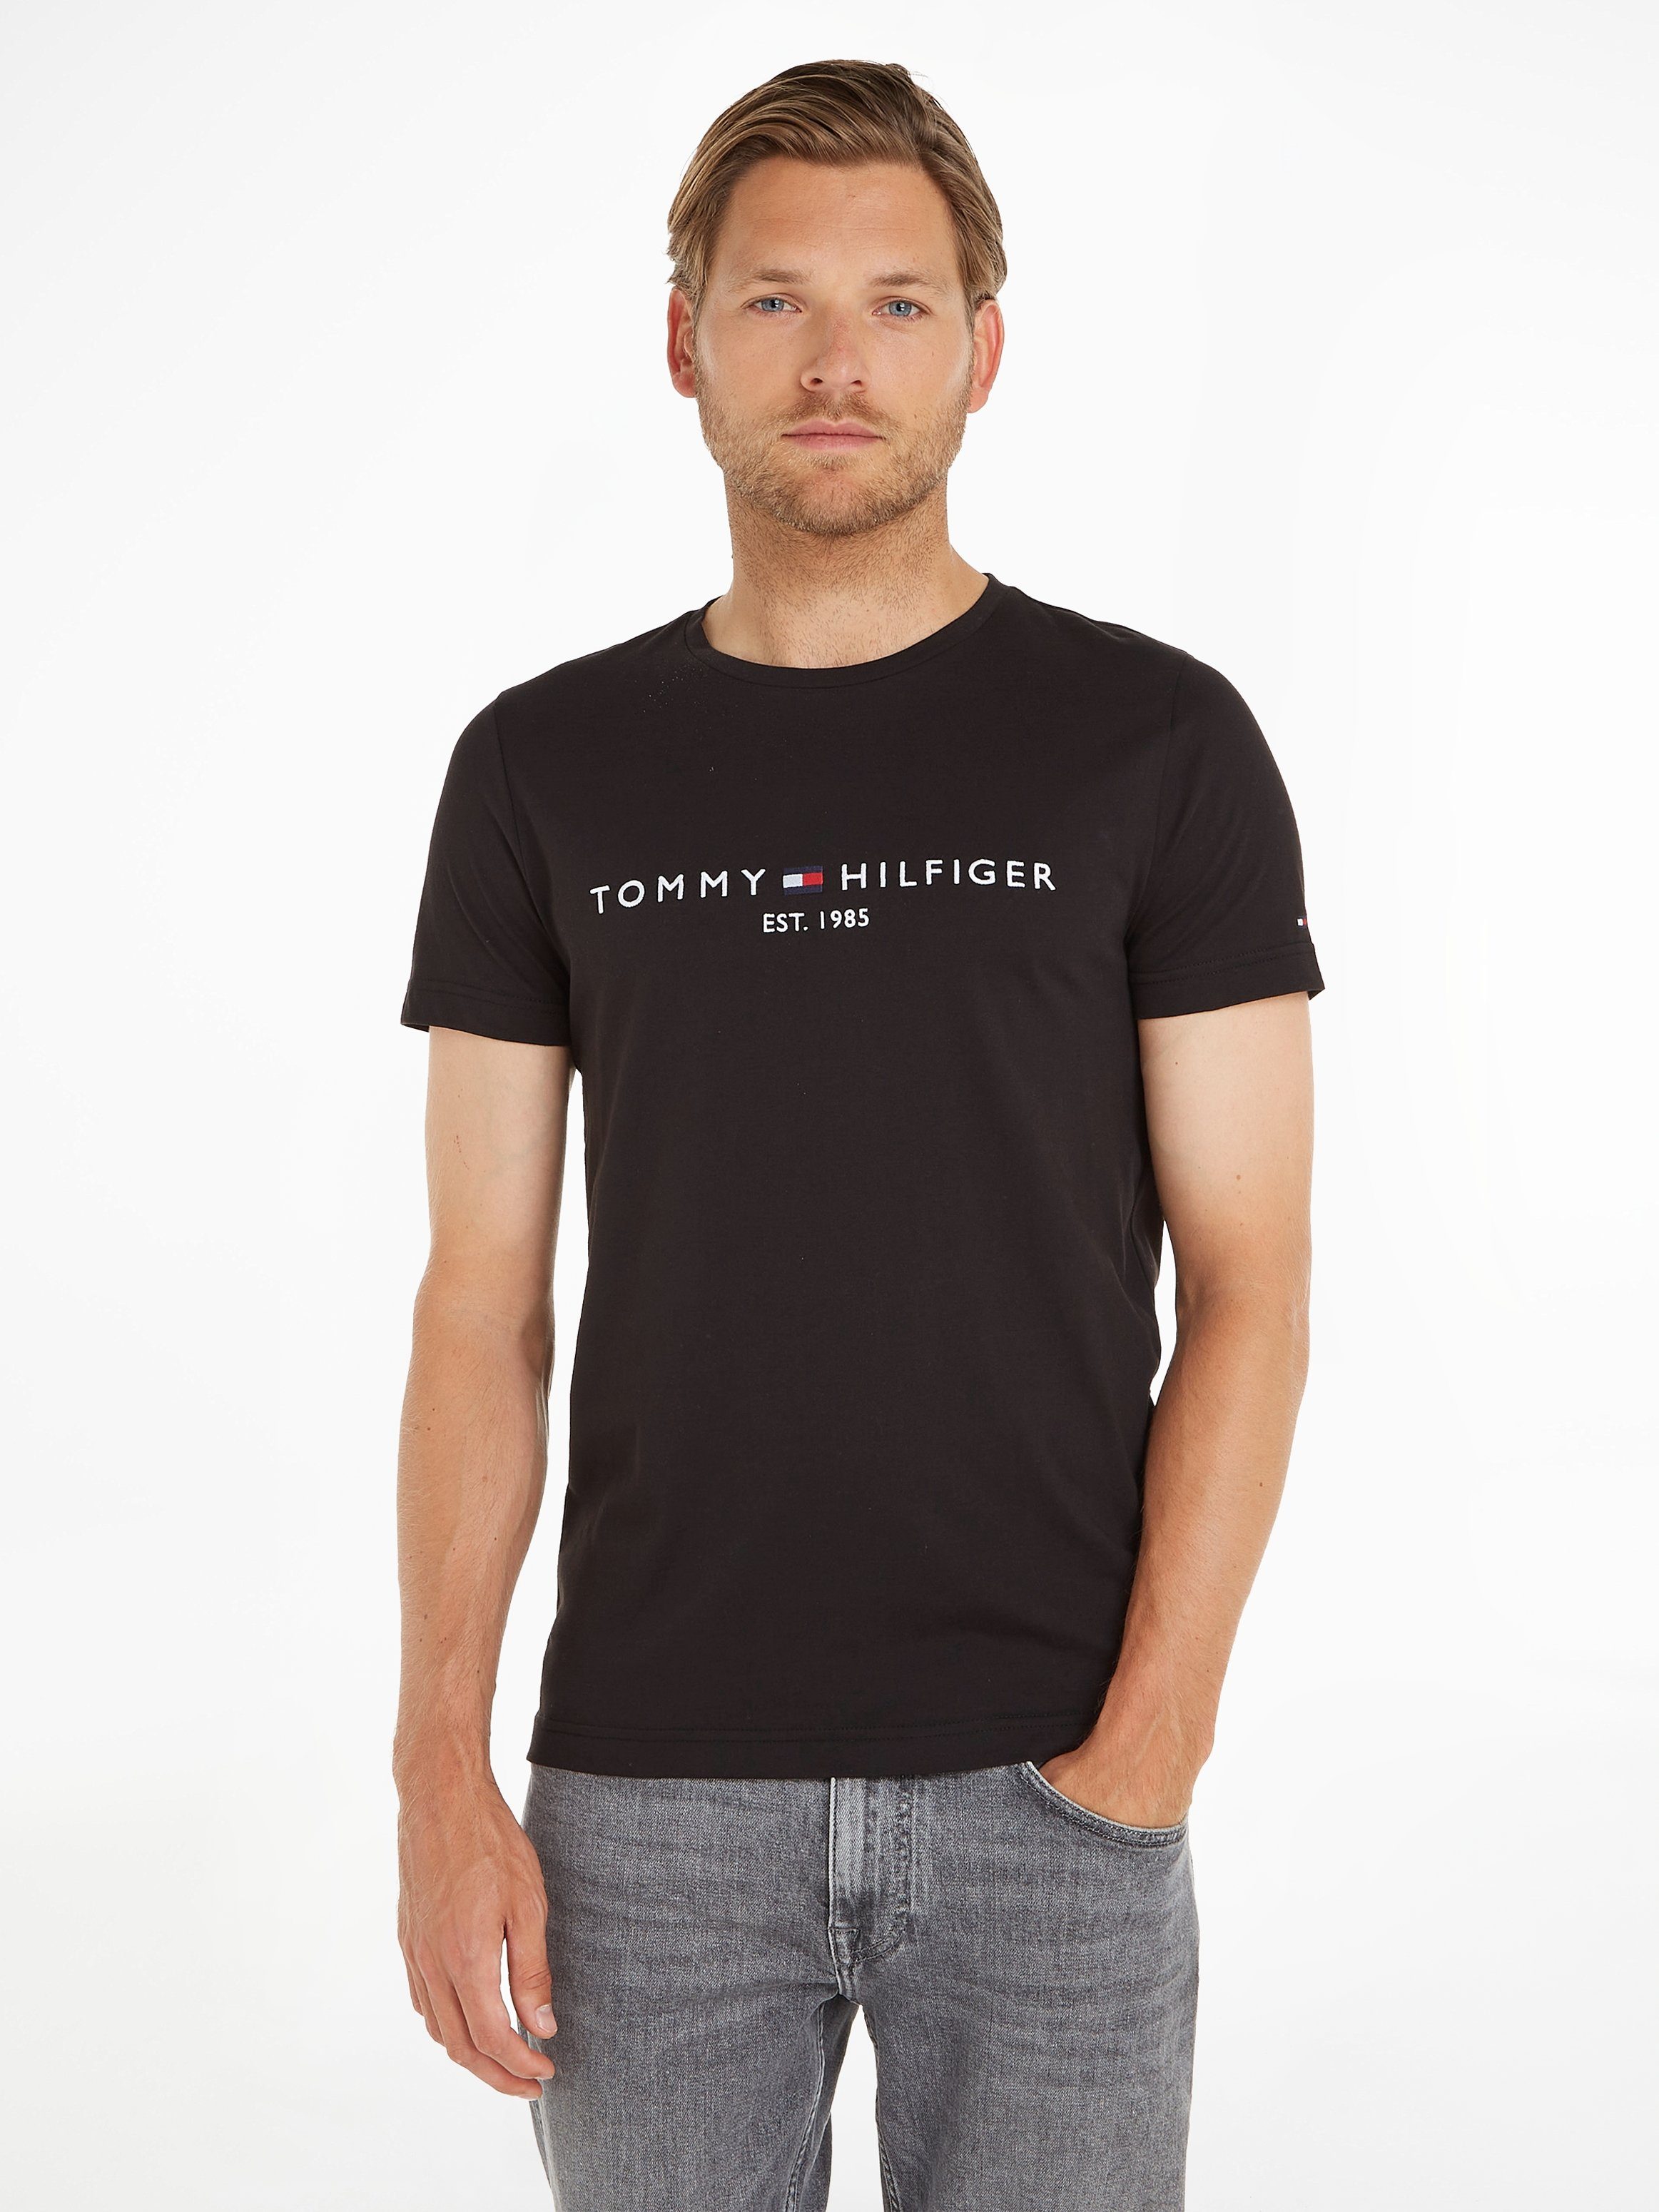 Tommy Hilfiger T-Shirt TOMMY FLAG HILFIGER TEE jet black